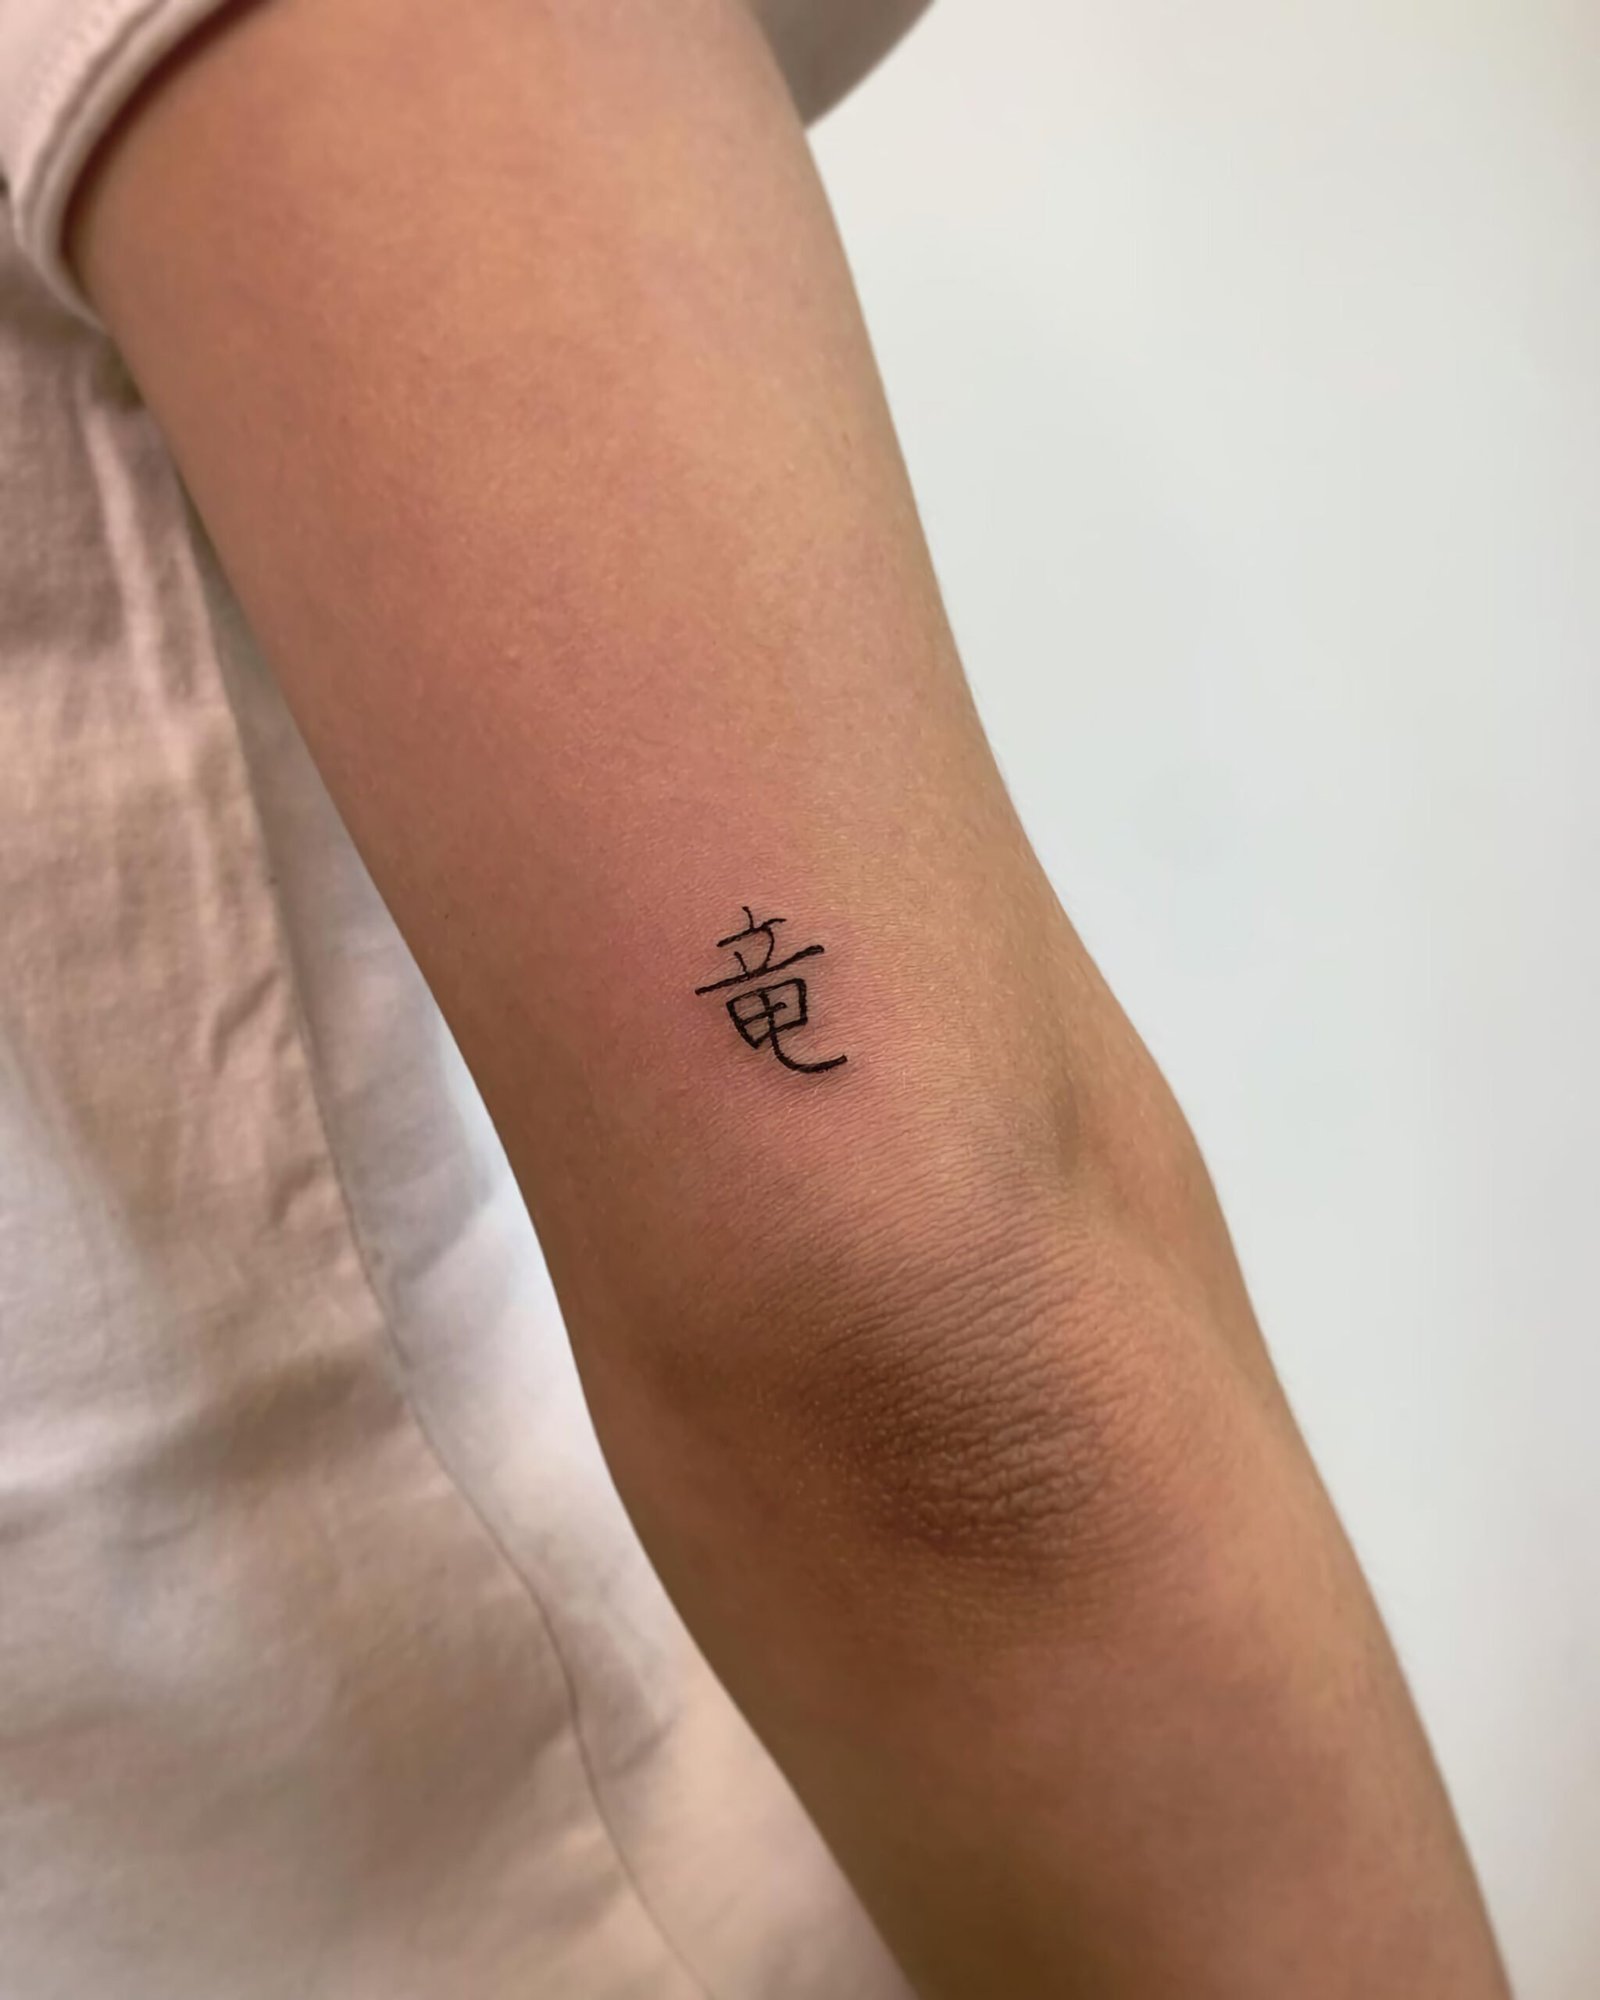 маленькая татуировка иероглифа 